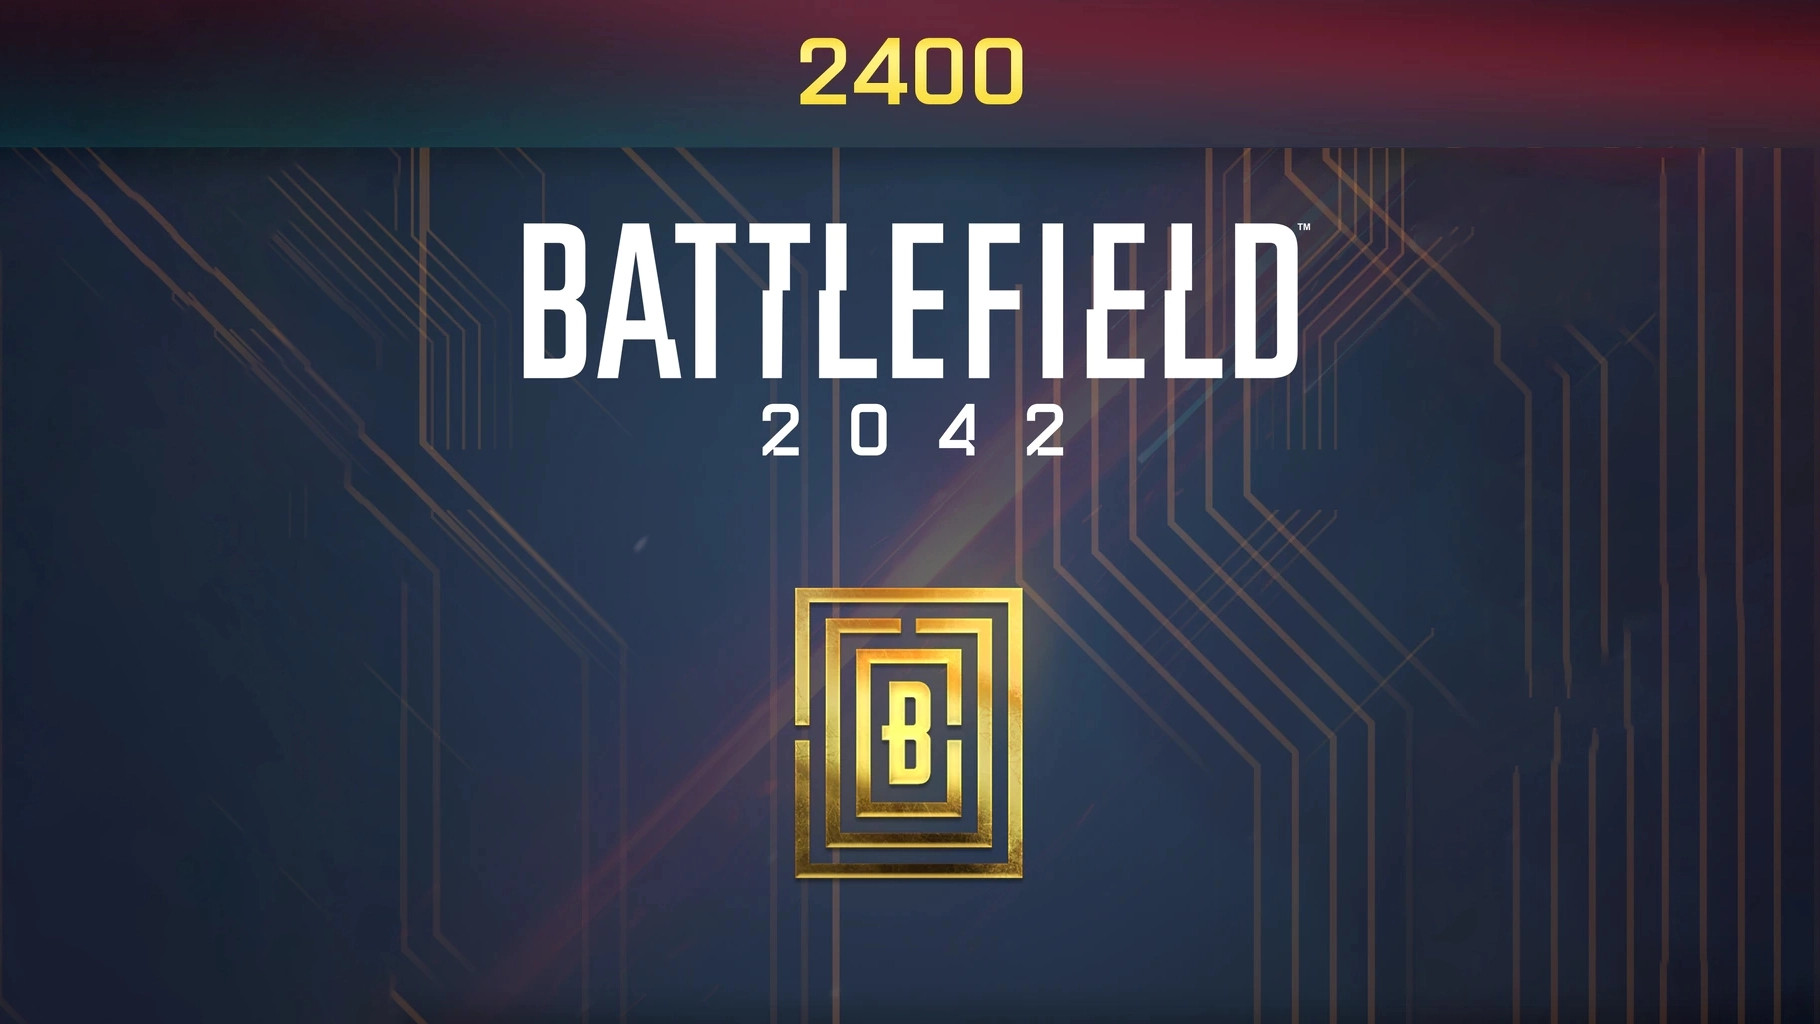 Battlefield 2042 - 2400 BFC Balance XBOX One / Xbox Series X|S CD Key 20.9 $